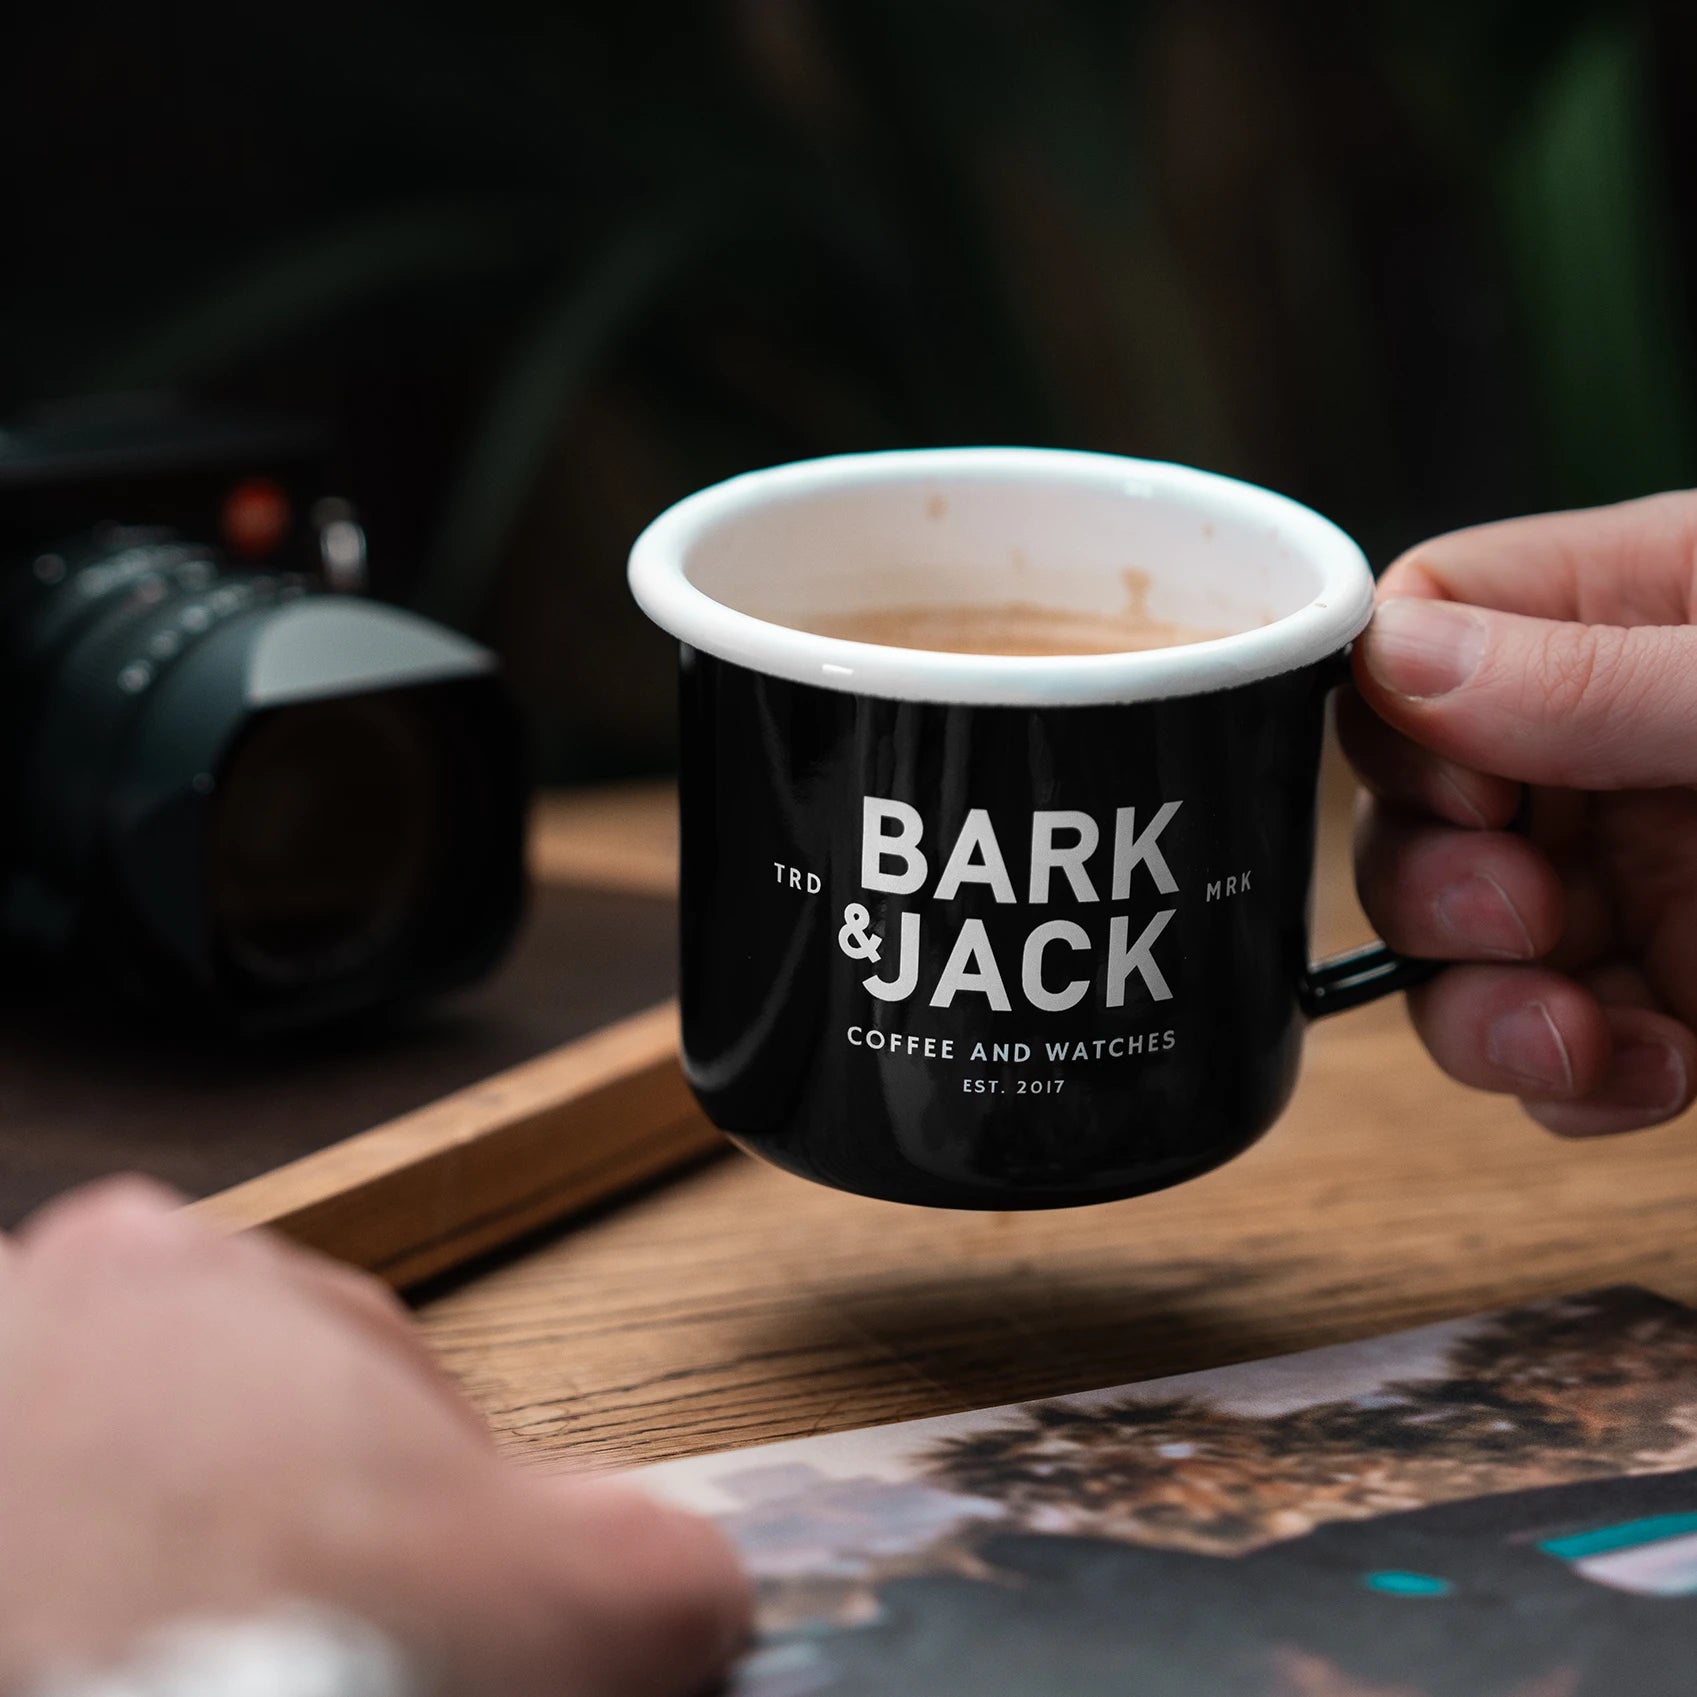 Black Enamel Coffee Mug